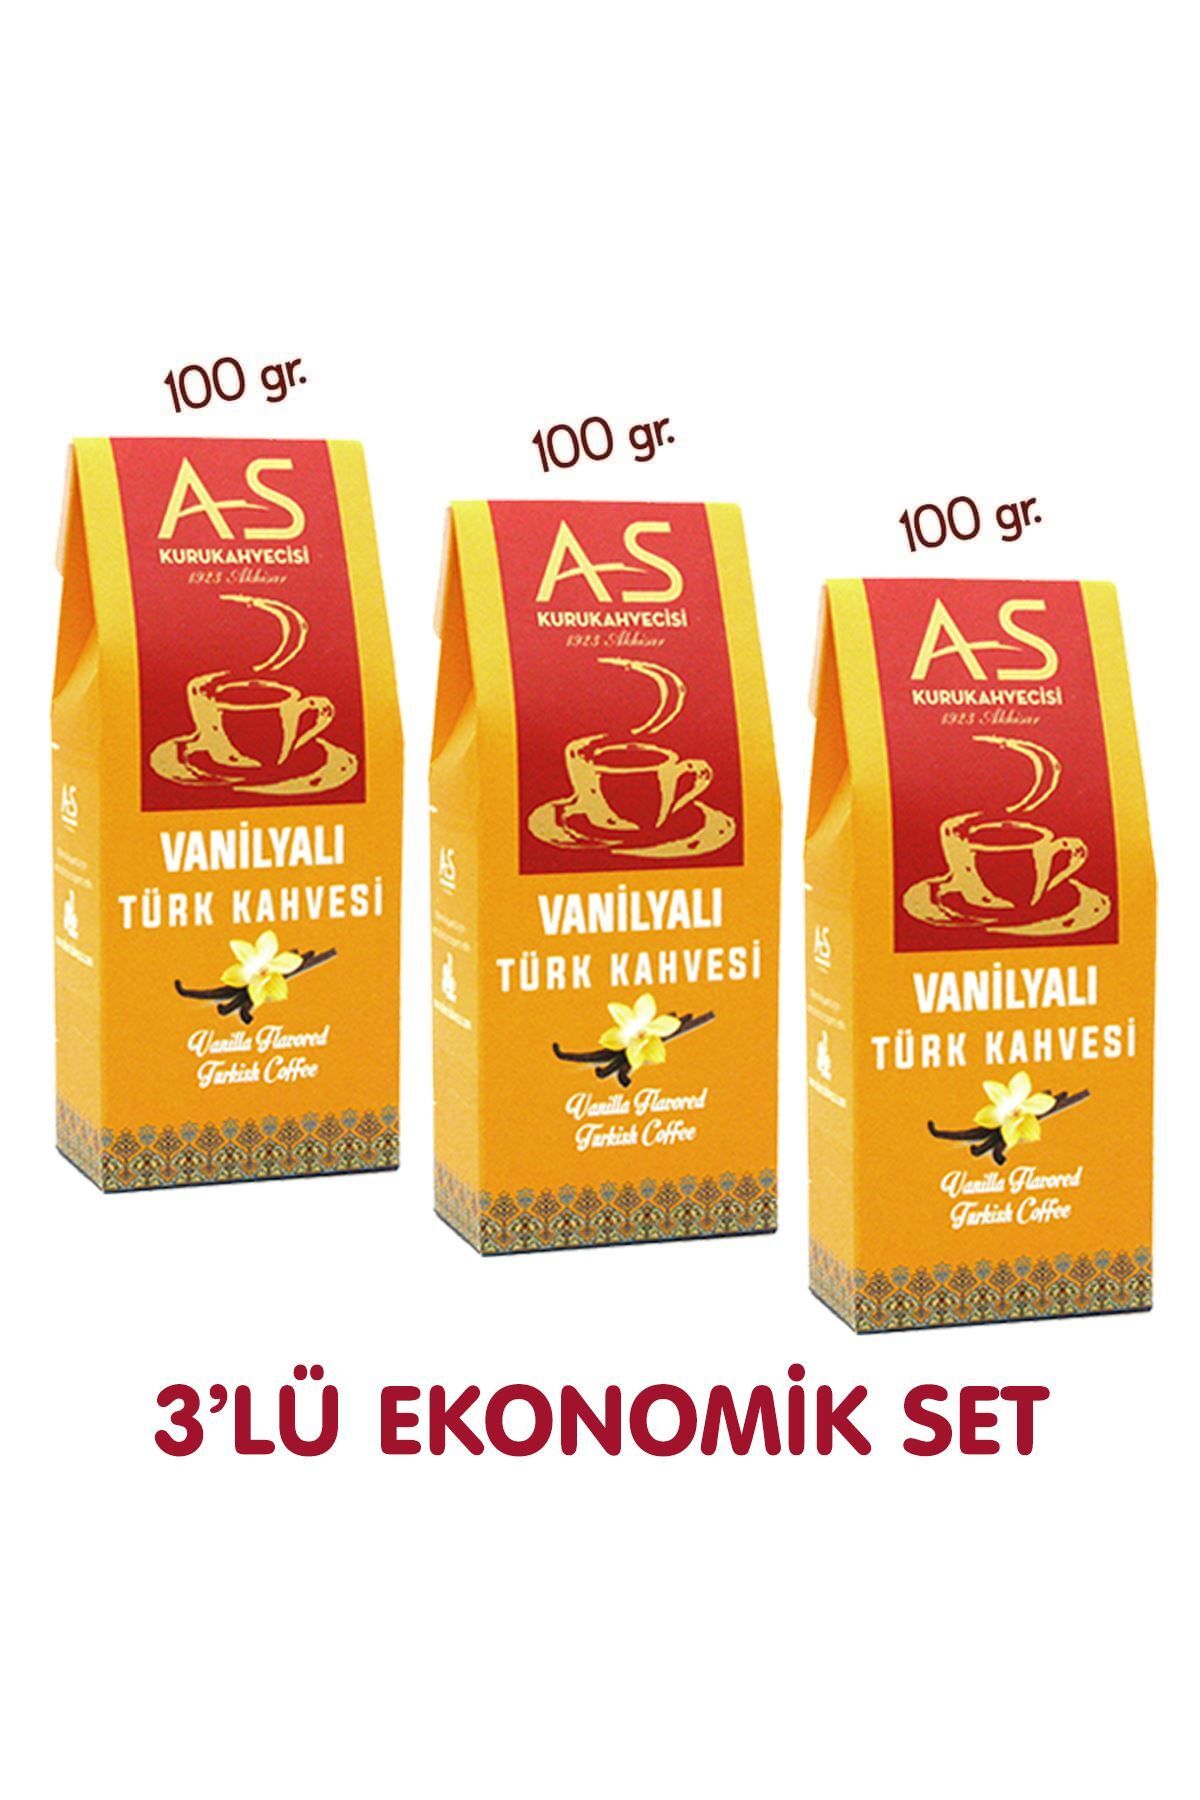 AS Kurukahvecisi 3'lü Vanilyalı Türk Kahvesi Ekonomik Set